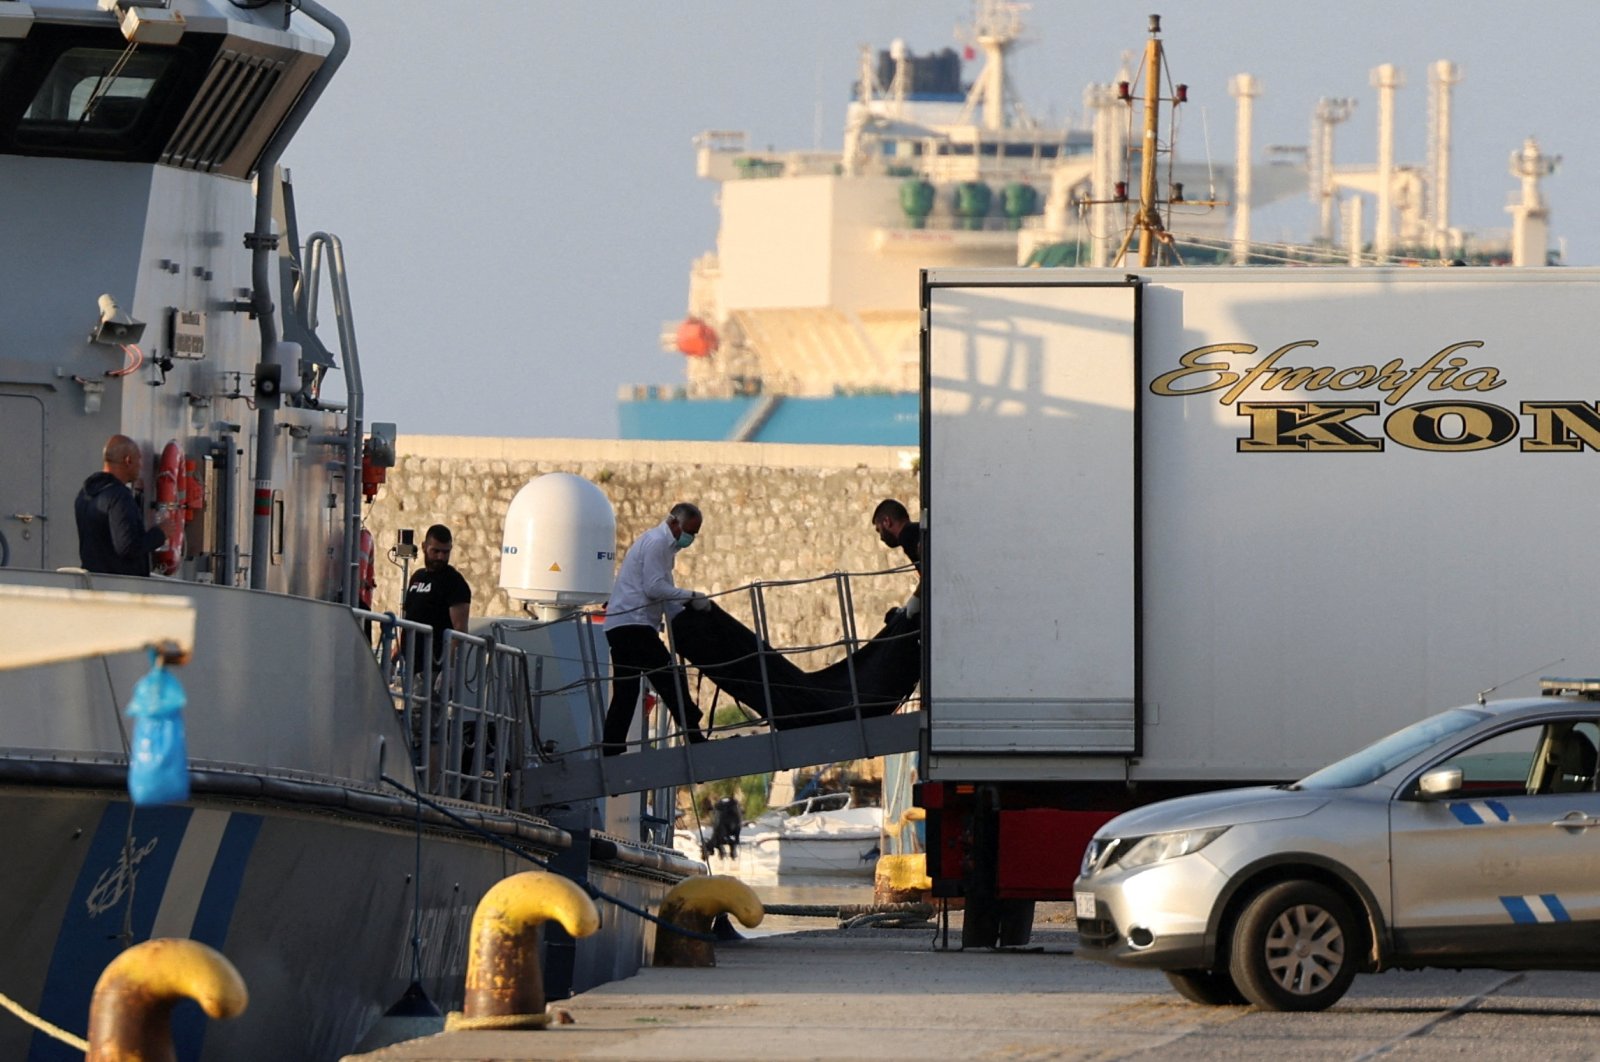 Yunani menjelajahi laut saat ratusan migran dikhawatirkan tenggelam di palka kapal